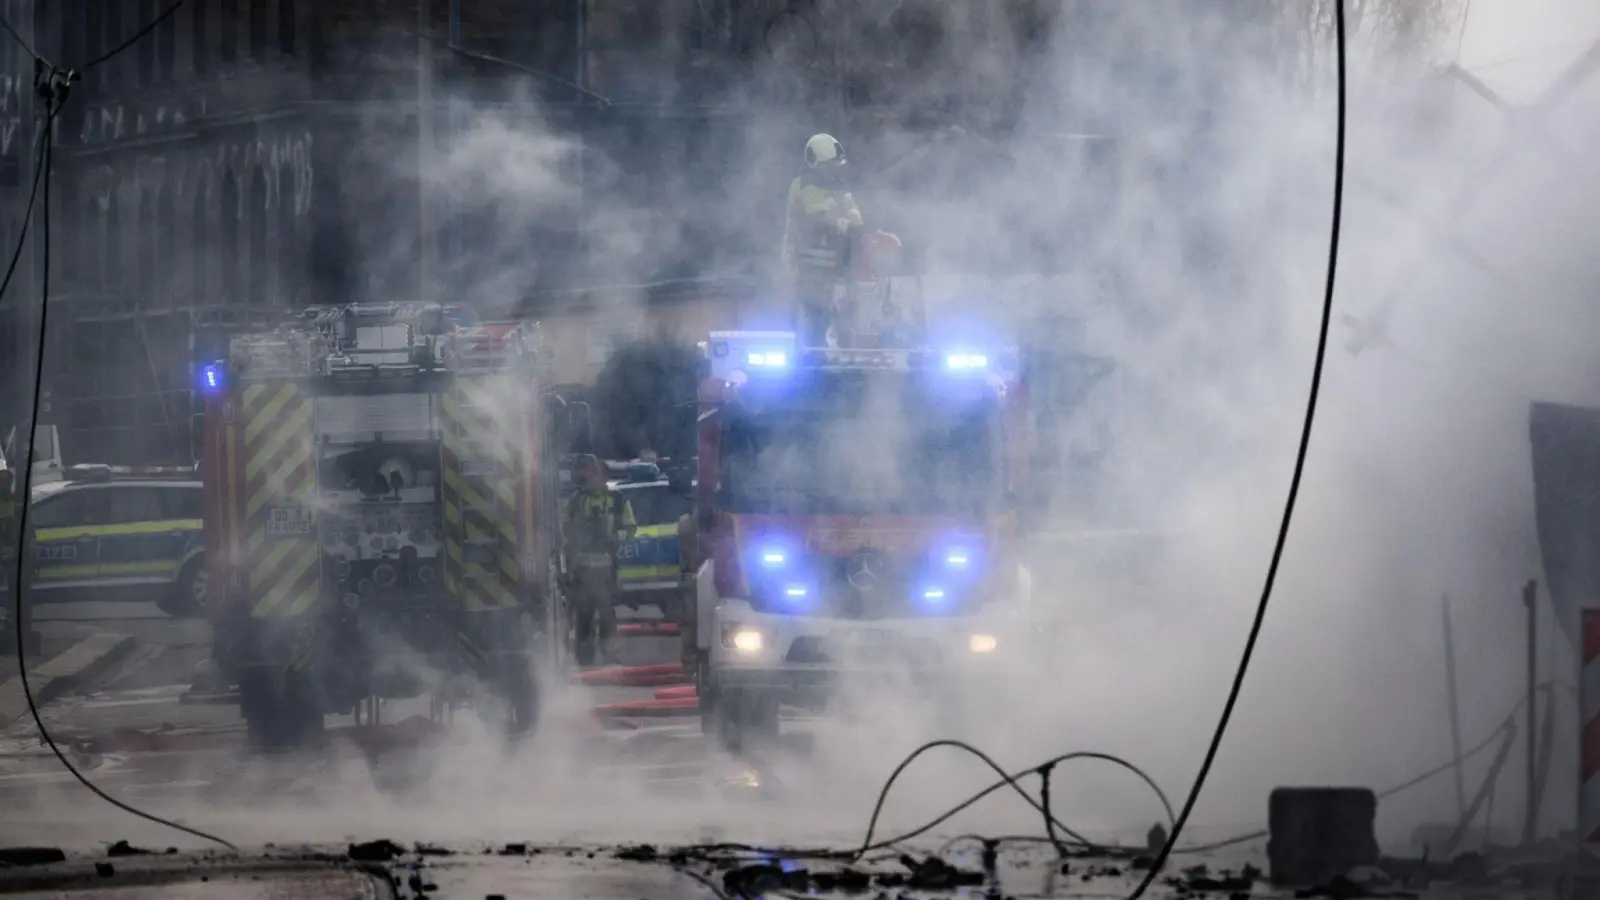 Feuerwehreinsatz wegen einer Gasexplosion in Dresden. Verletzte gab es nach Angaben der Feuerwehr nicht. (Foto: Robert Michael/dpa)